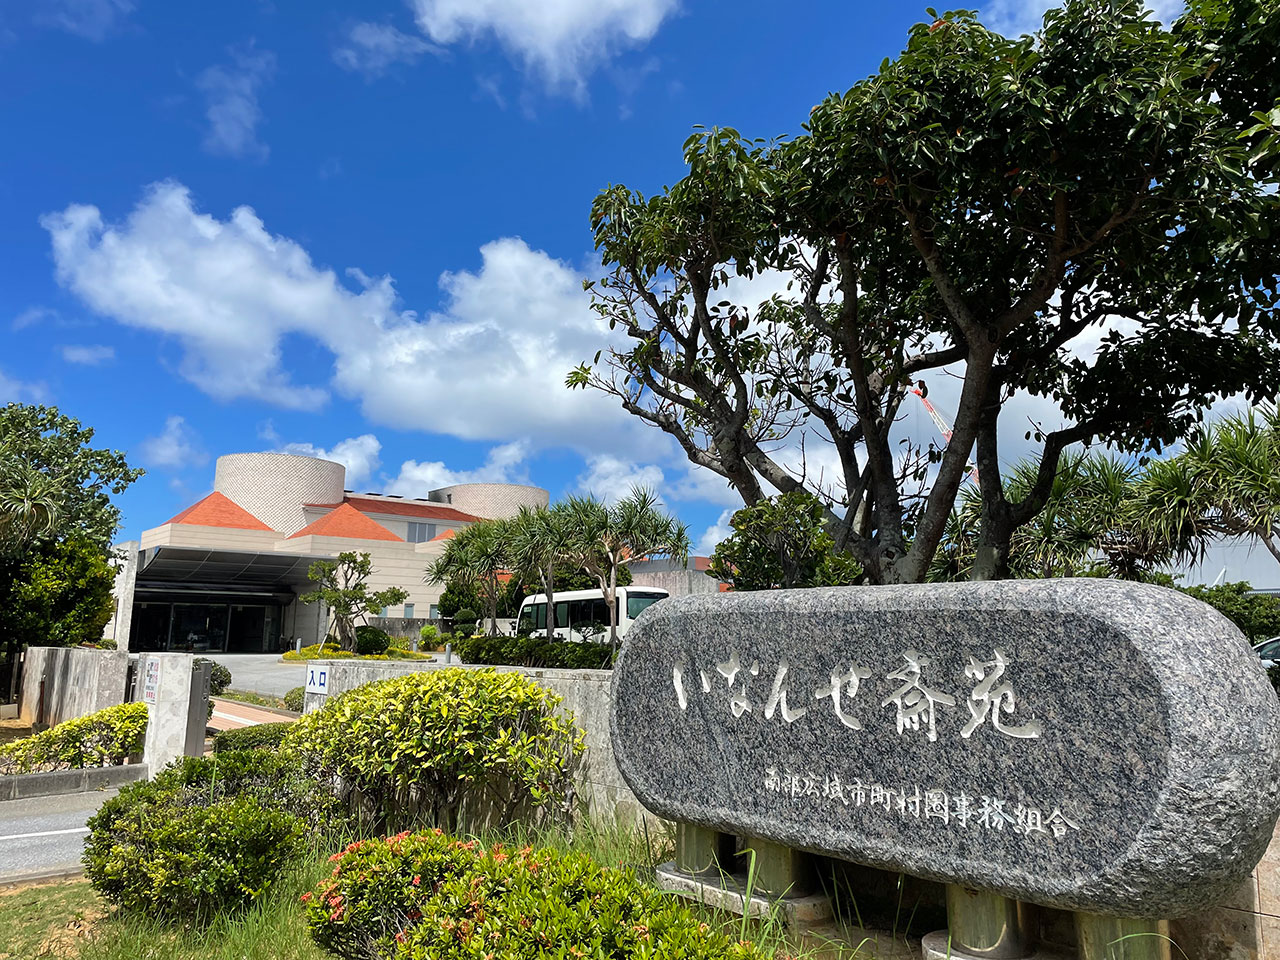 火葬日当日、東京からスタッフが沖縄へ赴き、関係者と一緒にお別れをさせて頂きました